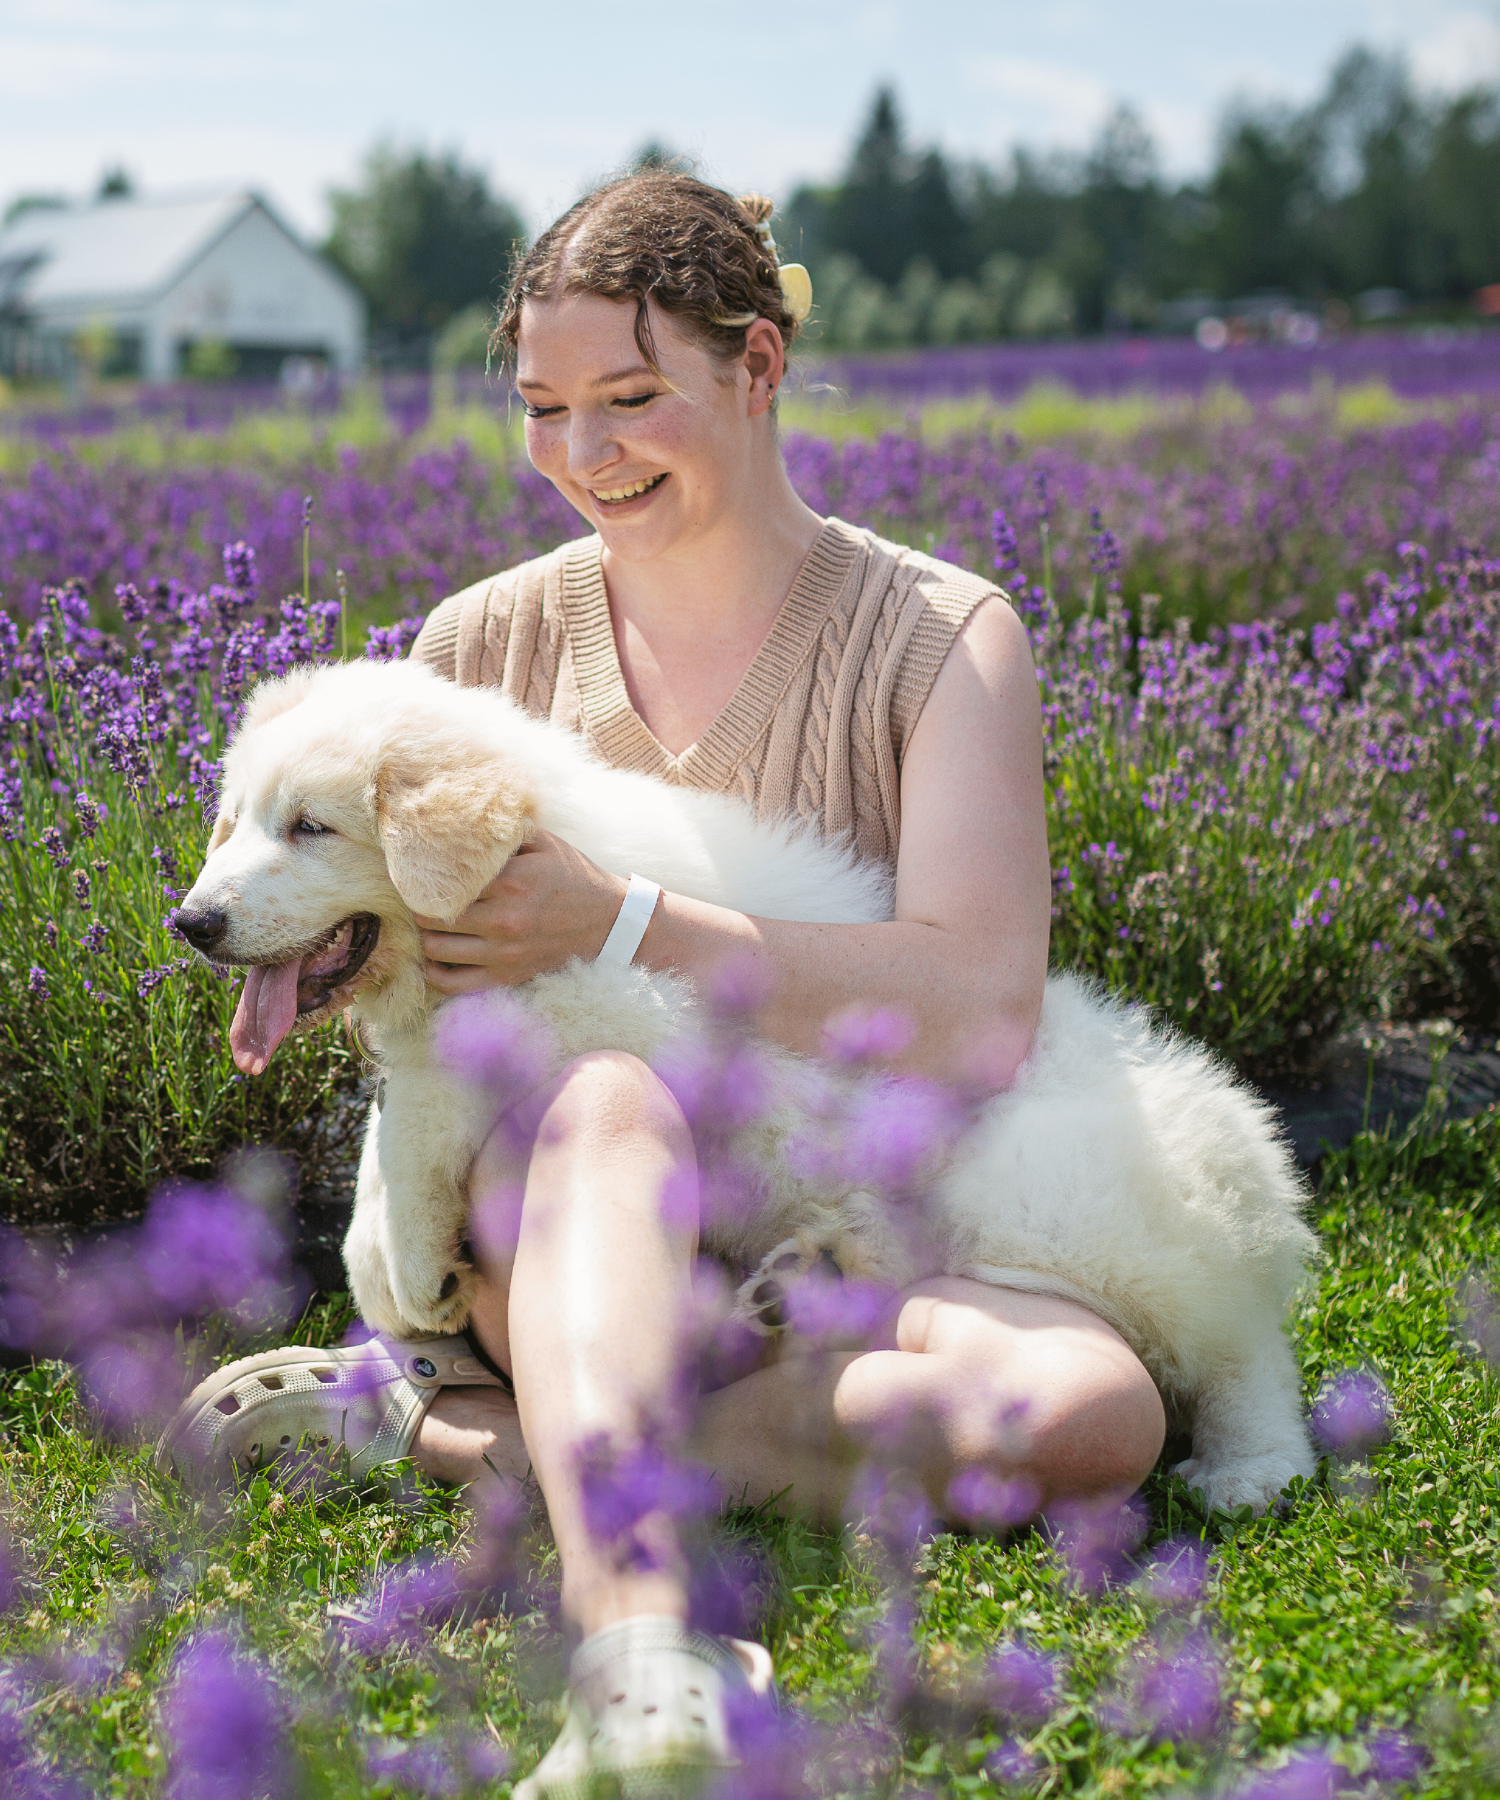 Femme qui flatte son chien dans le champs de lavande | Woman with dog in lavender field